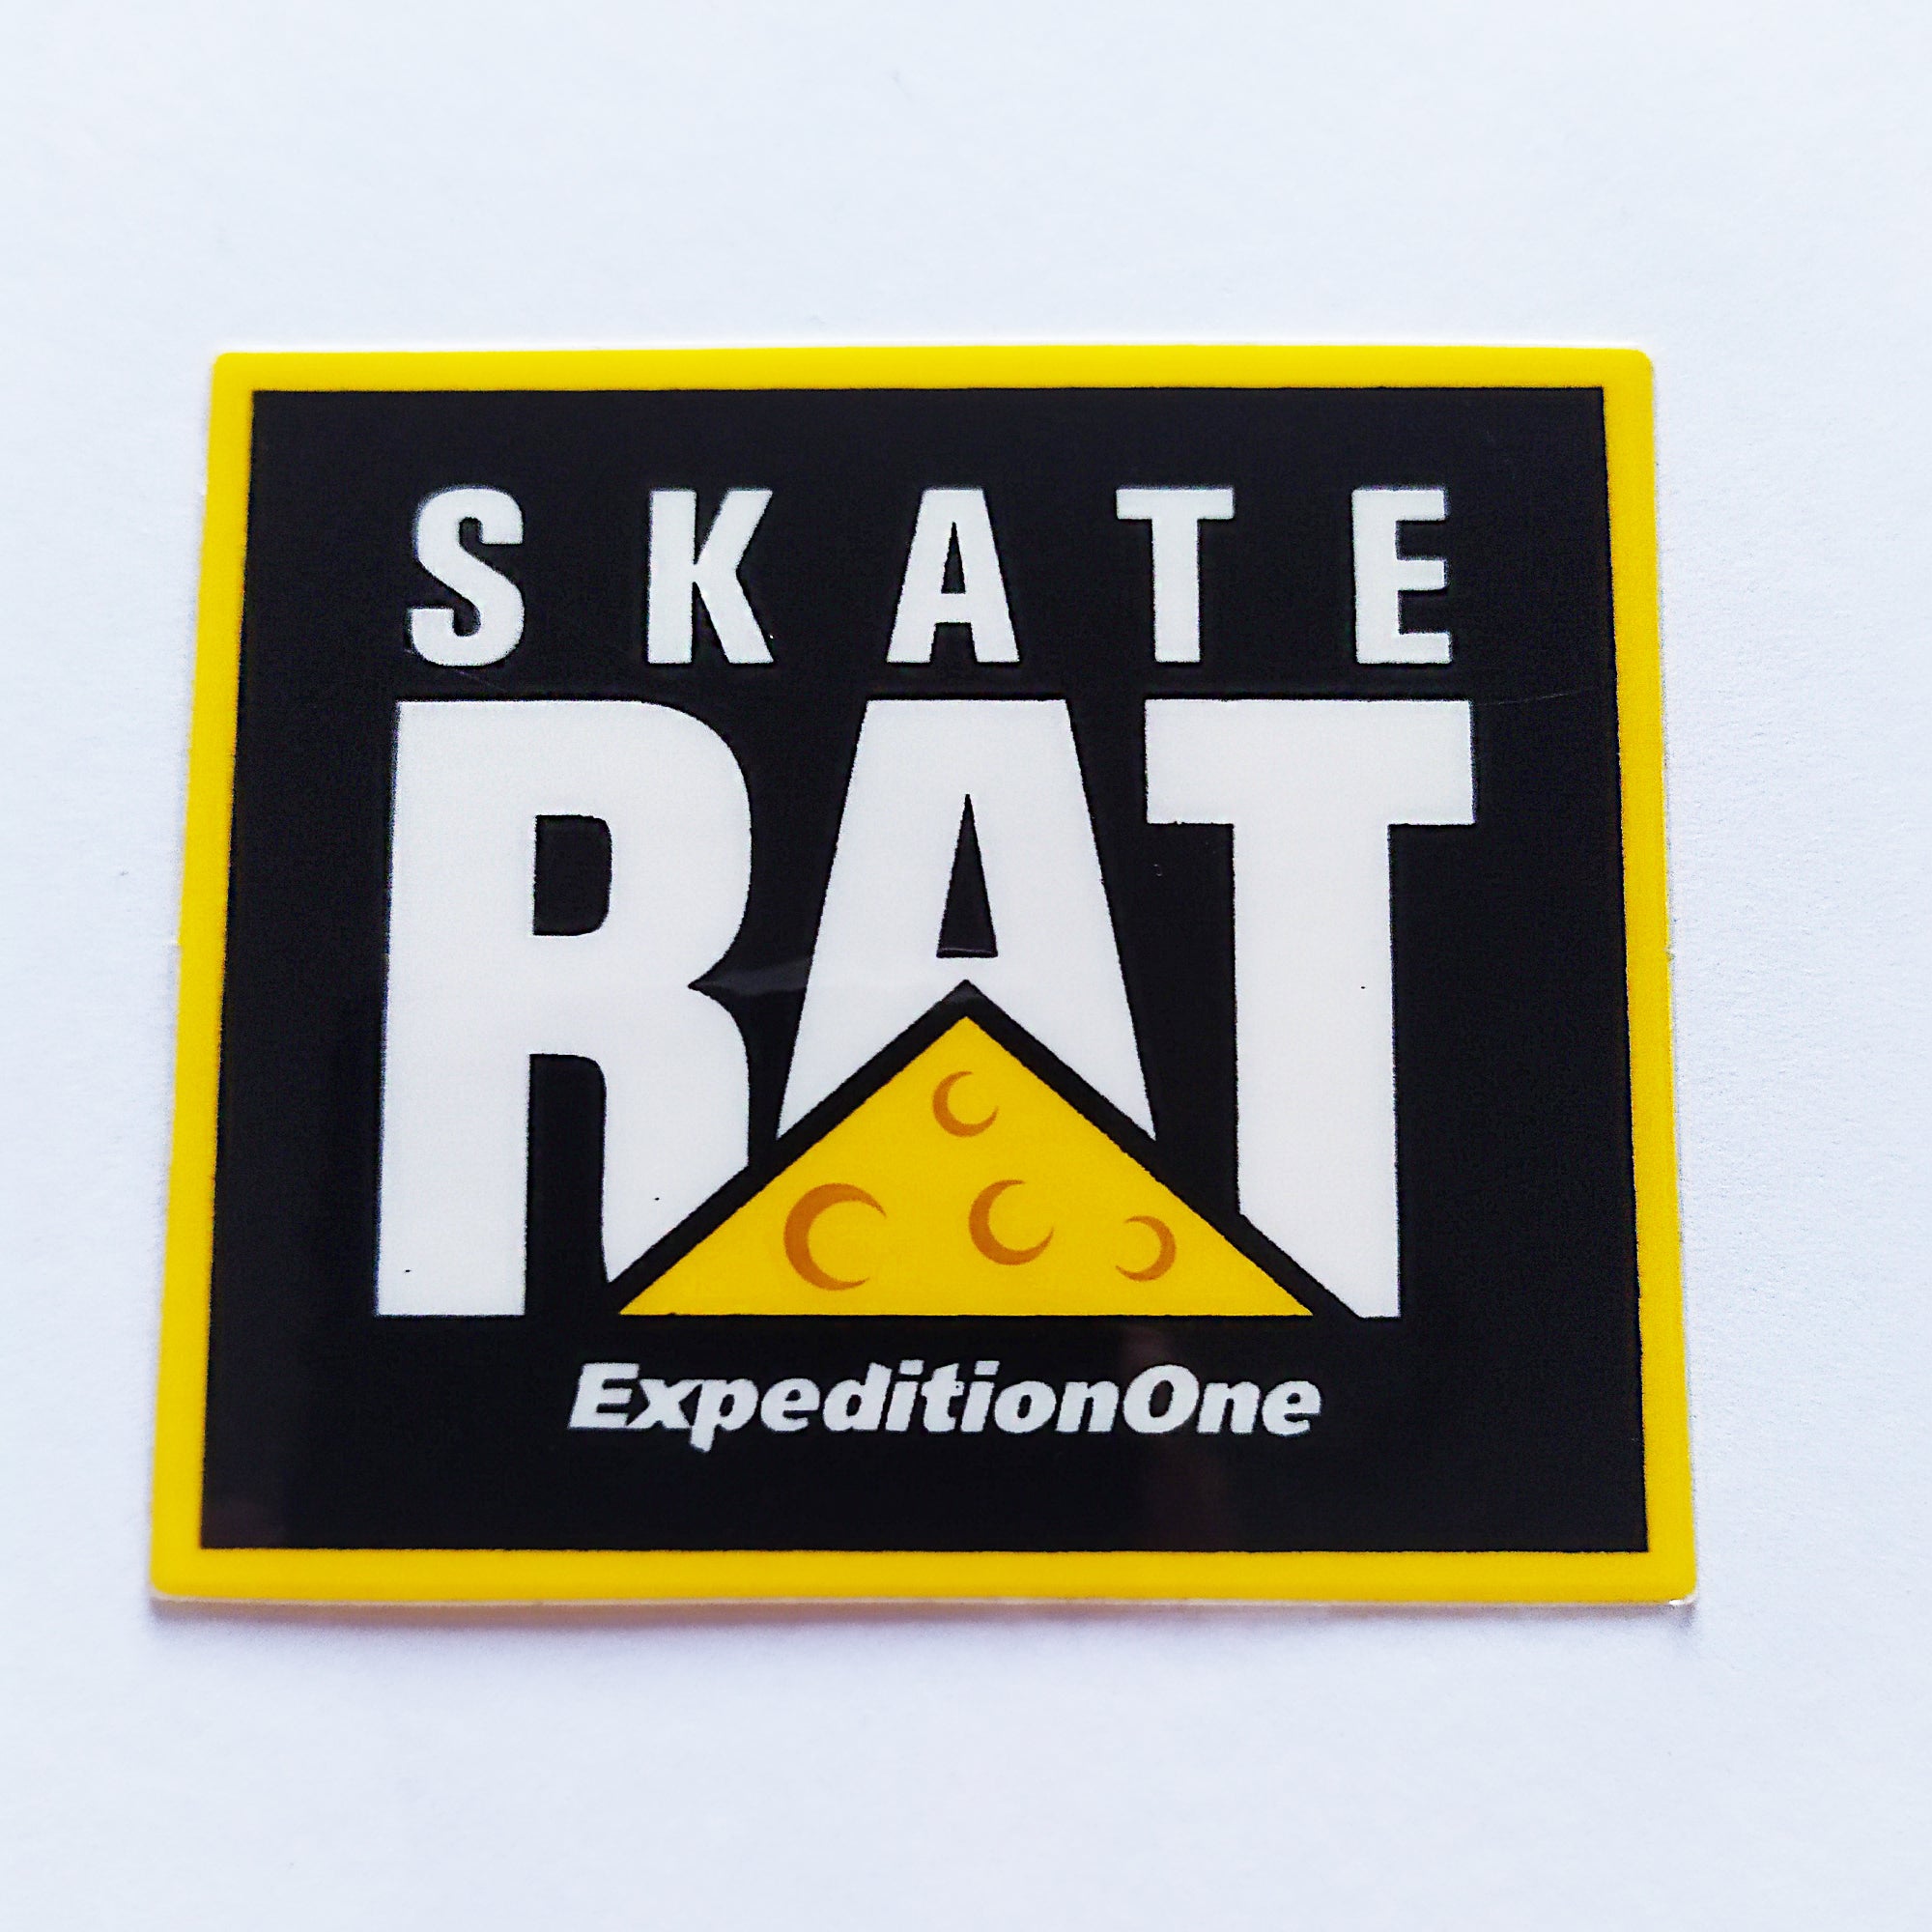 Expedition One Skateboard Sticker - "Skate Rat" - SkateboardStickers.com